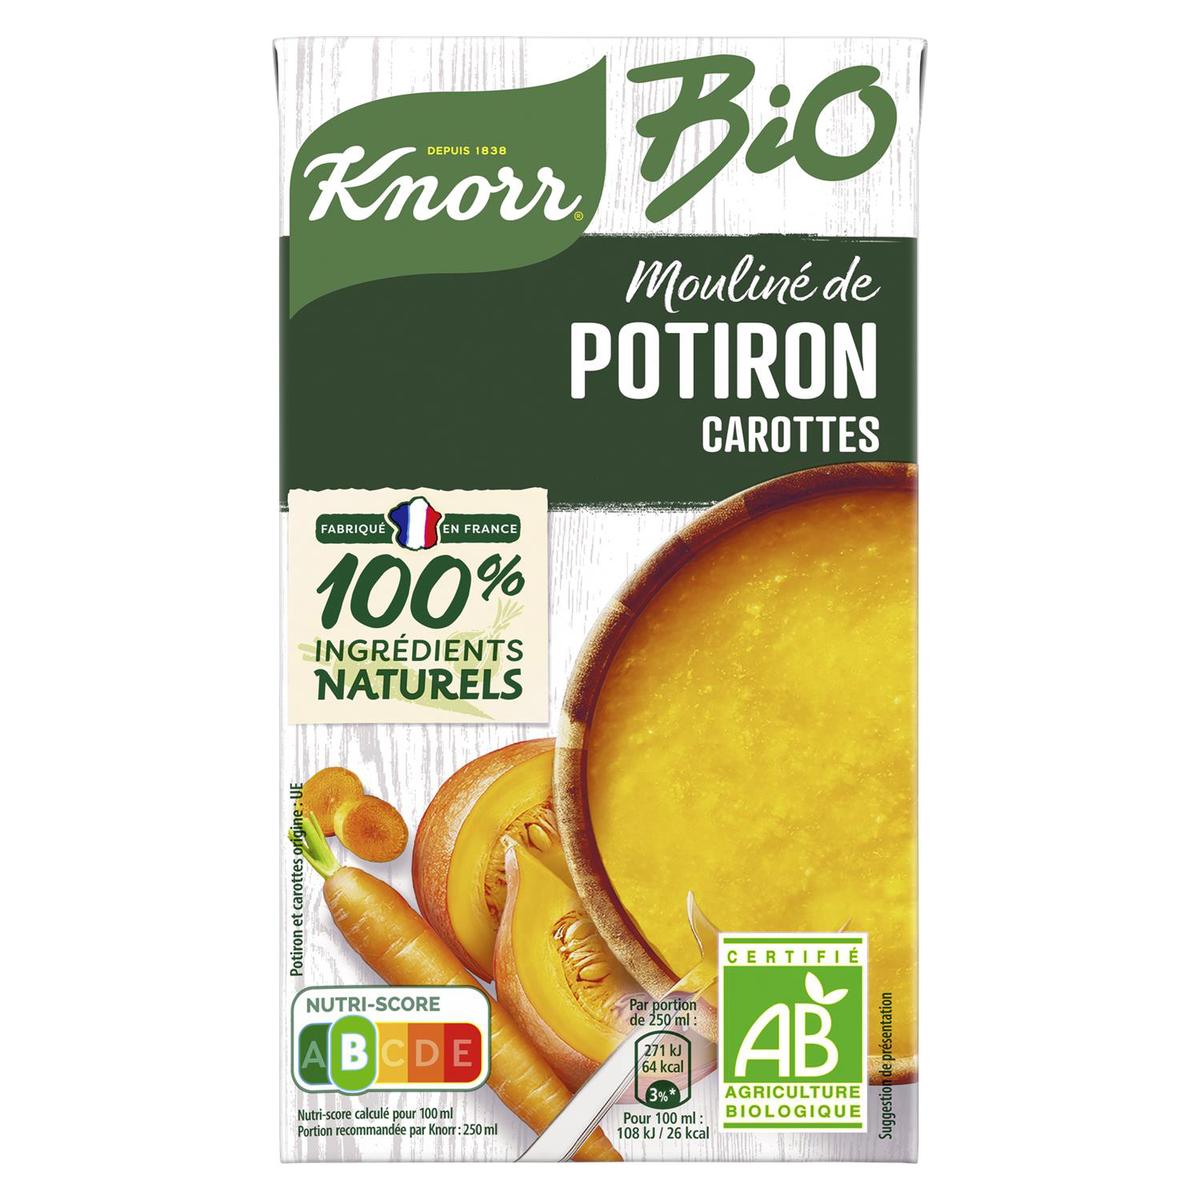 Knorr Soupe Bio Mouliné de Légumes Variés 